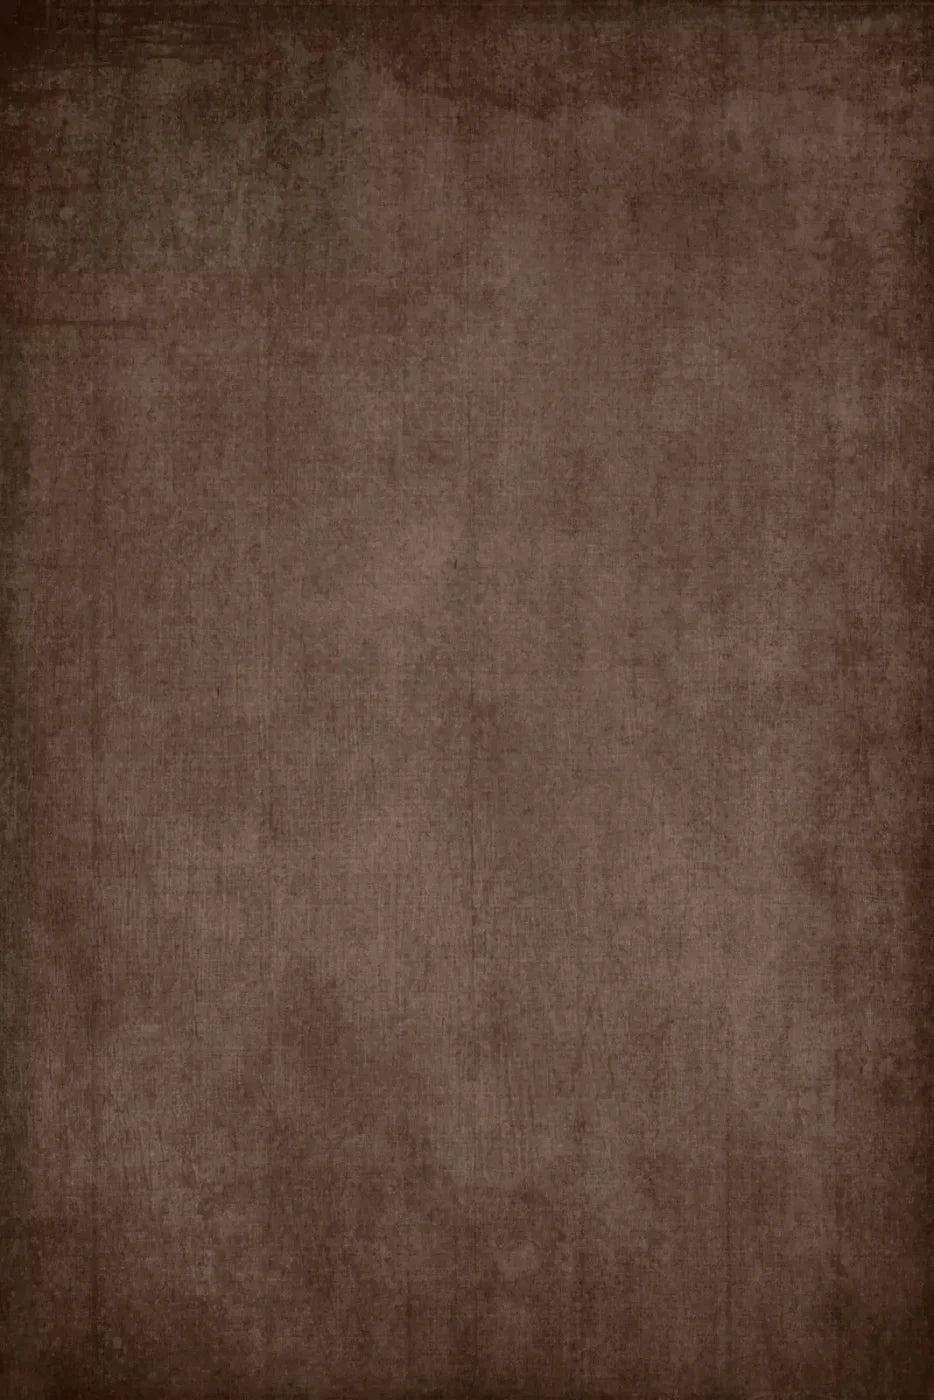 Brayden Brown 4X5 Rubbermat Floor ( 48 X 60 Inch ) Backdrop